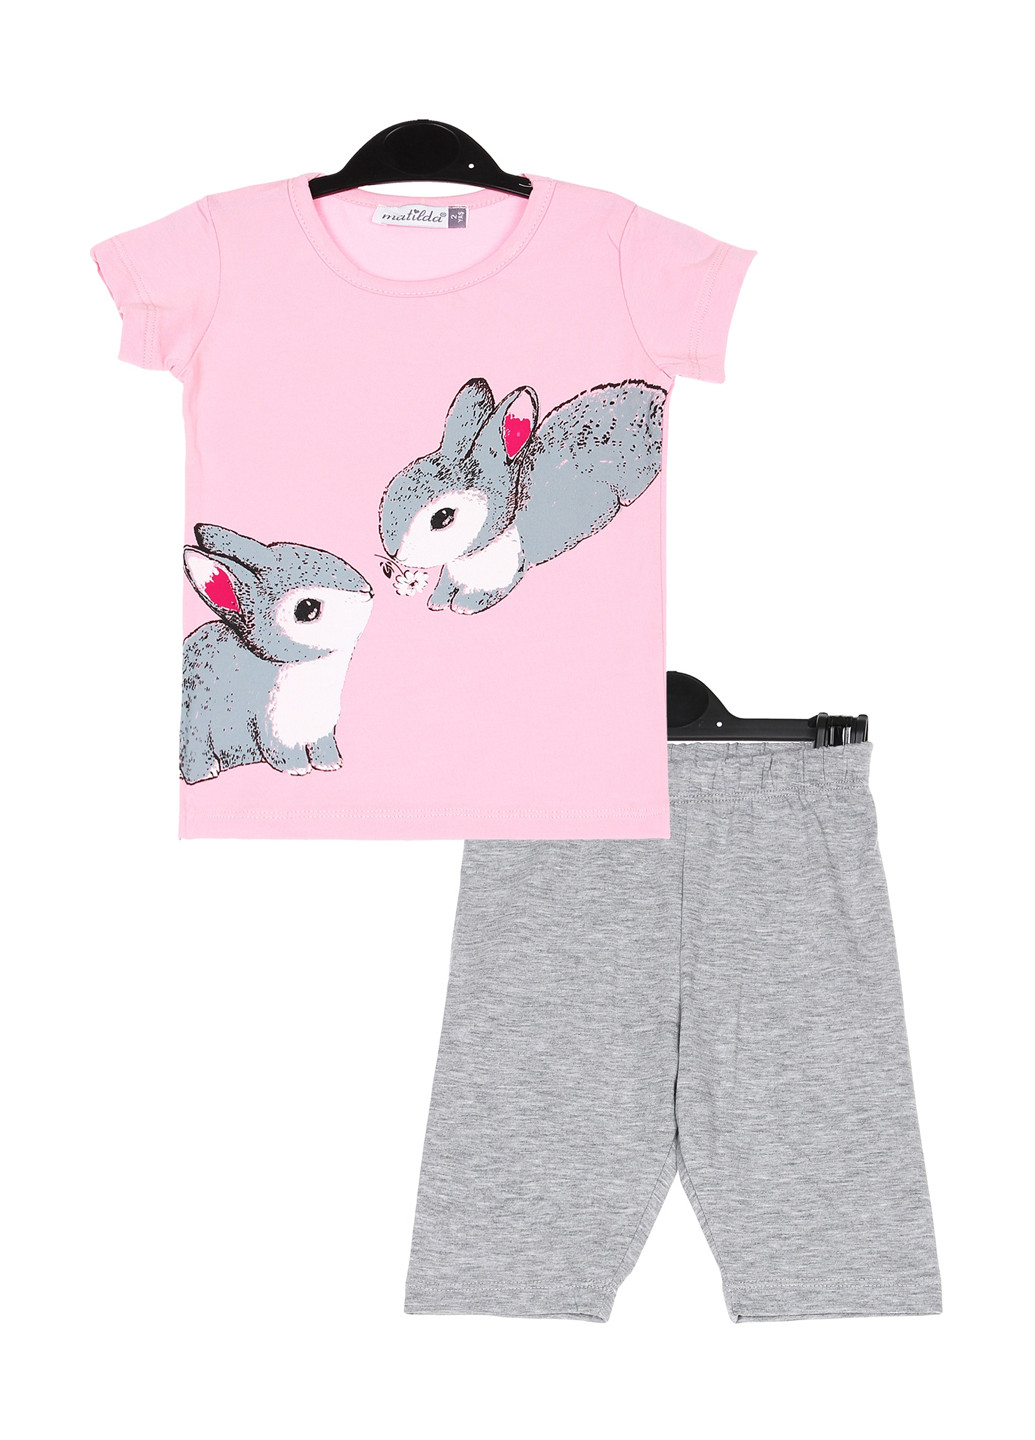 Комбинированная всесезон пижама (футболка, брюки) футболка + брюки Matilda